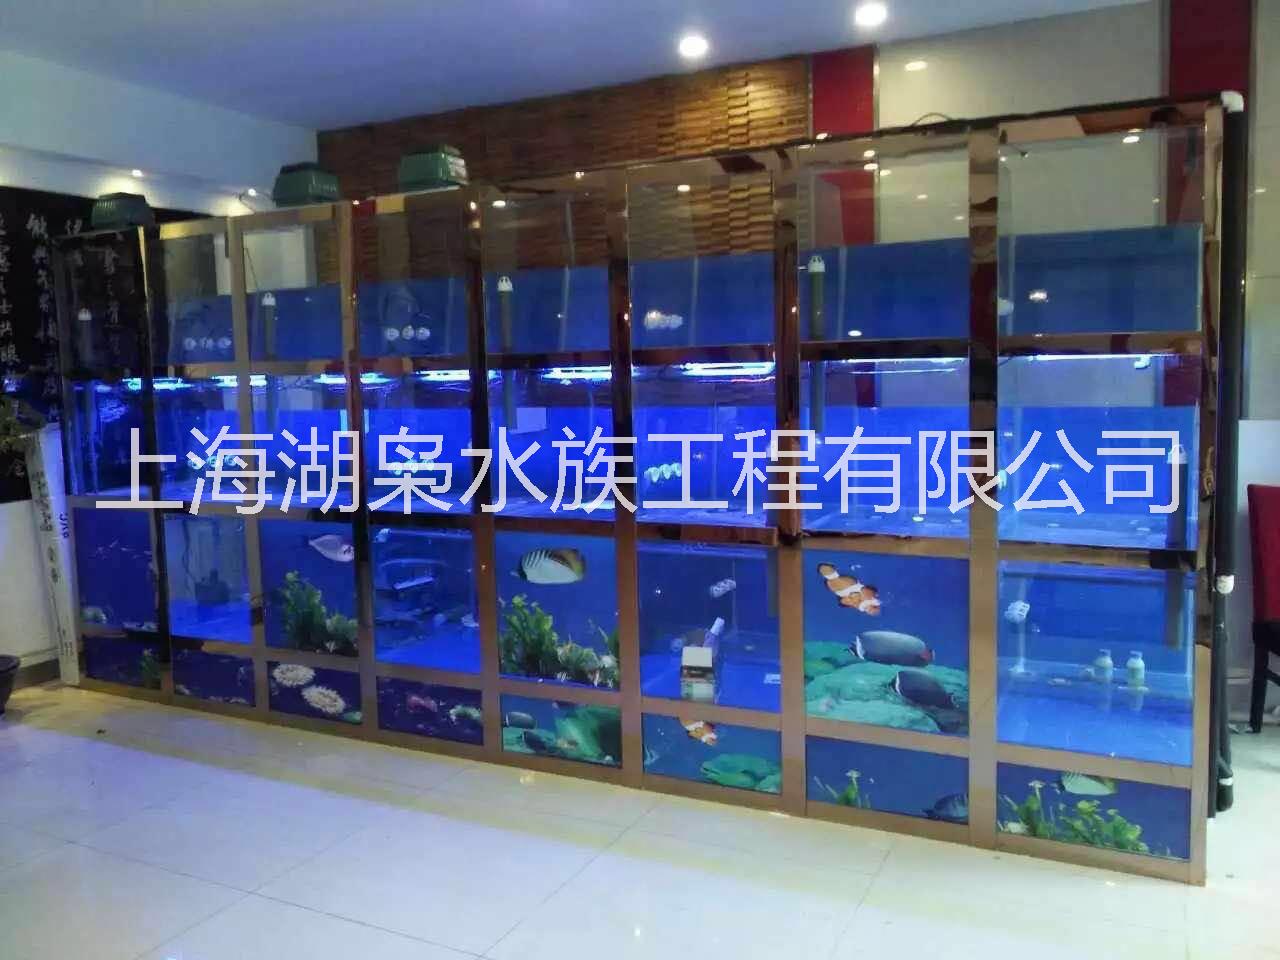 上海海鲜池定做公司 专业制作海鲜池效果图  海鲜池定做